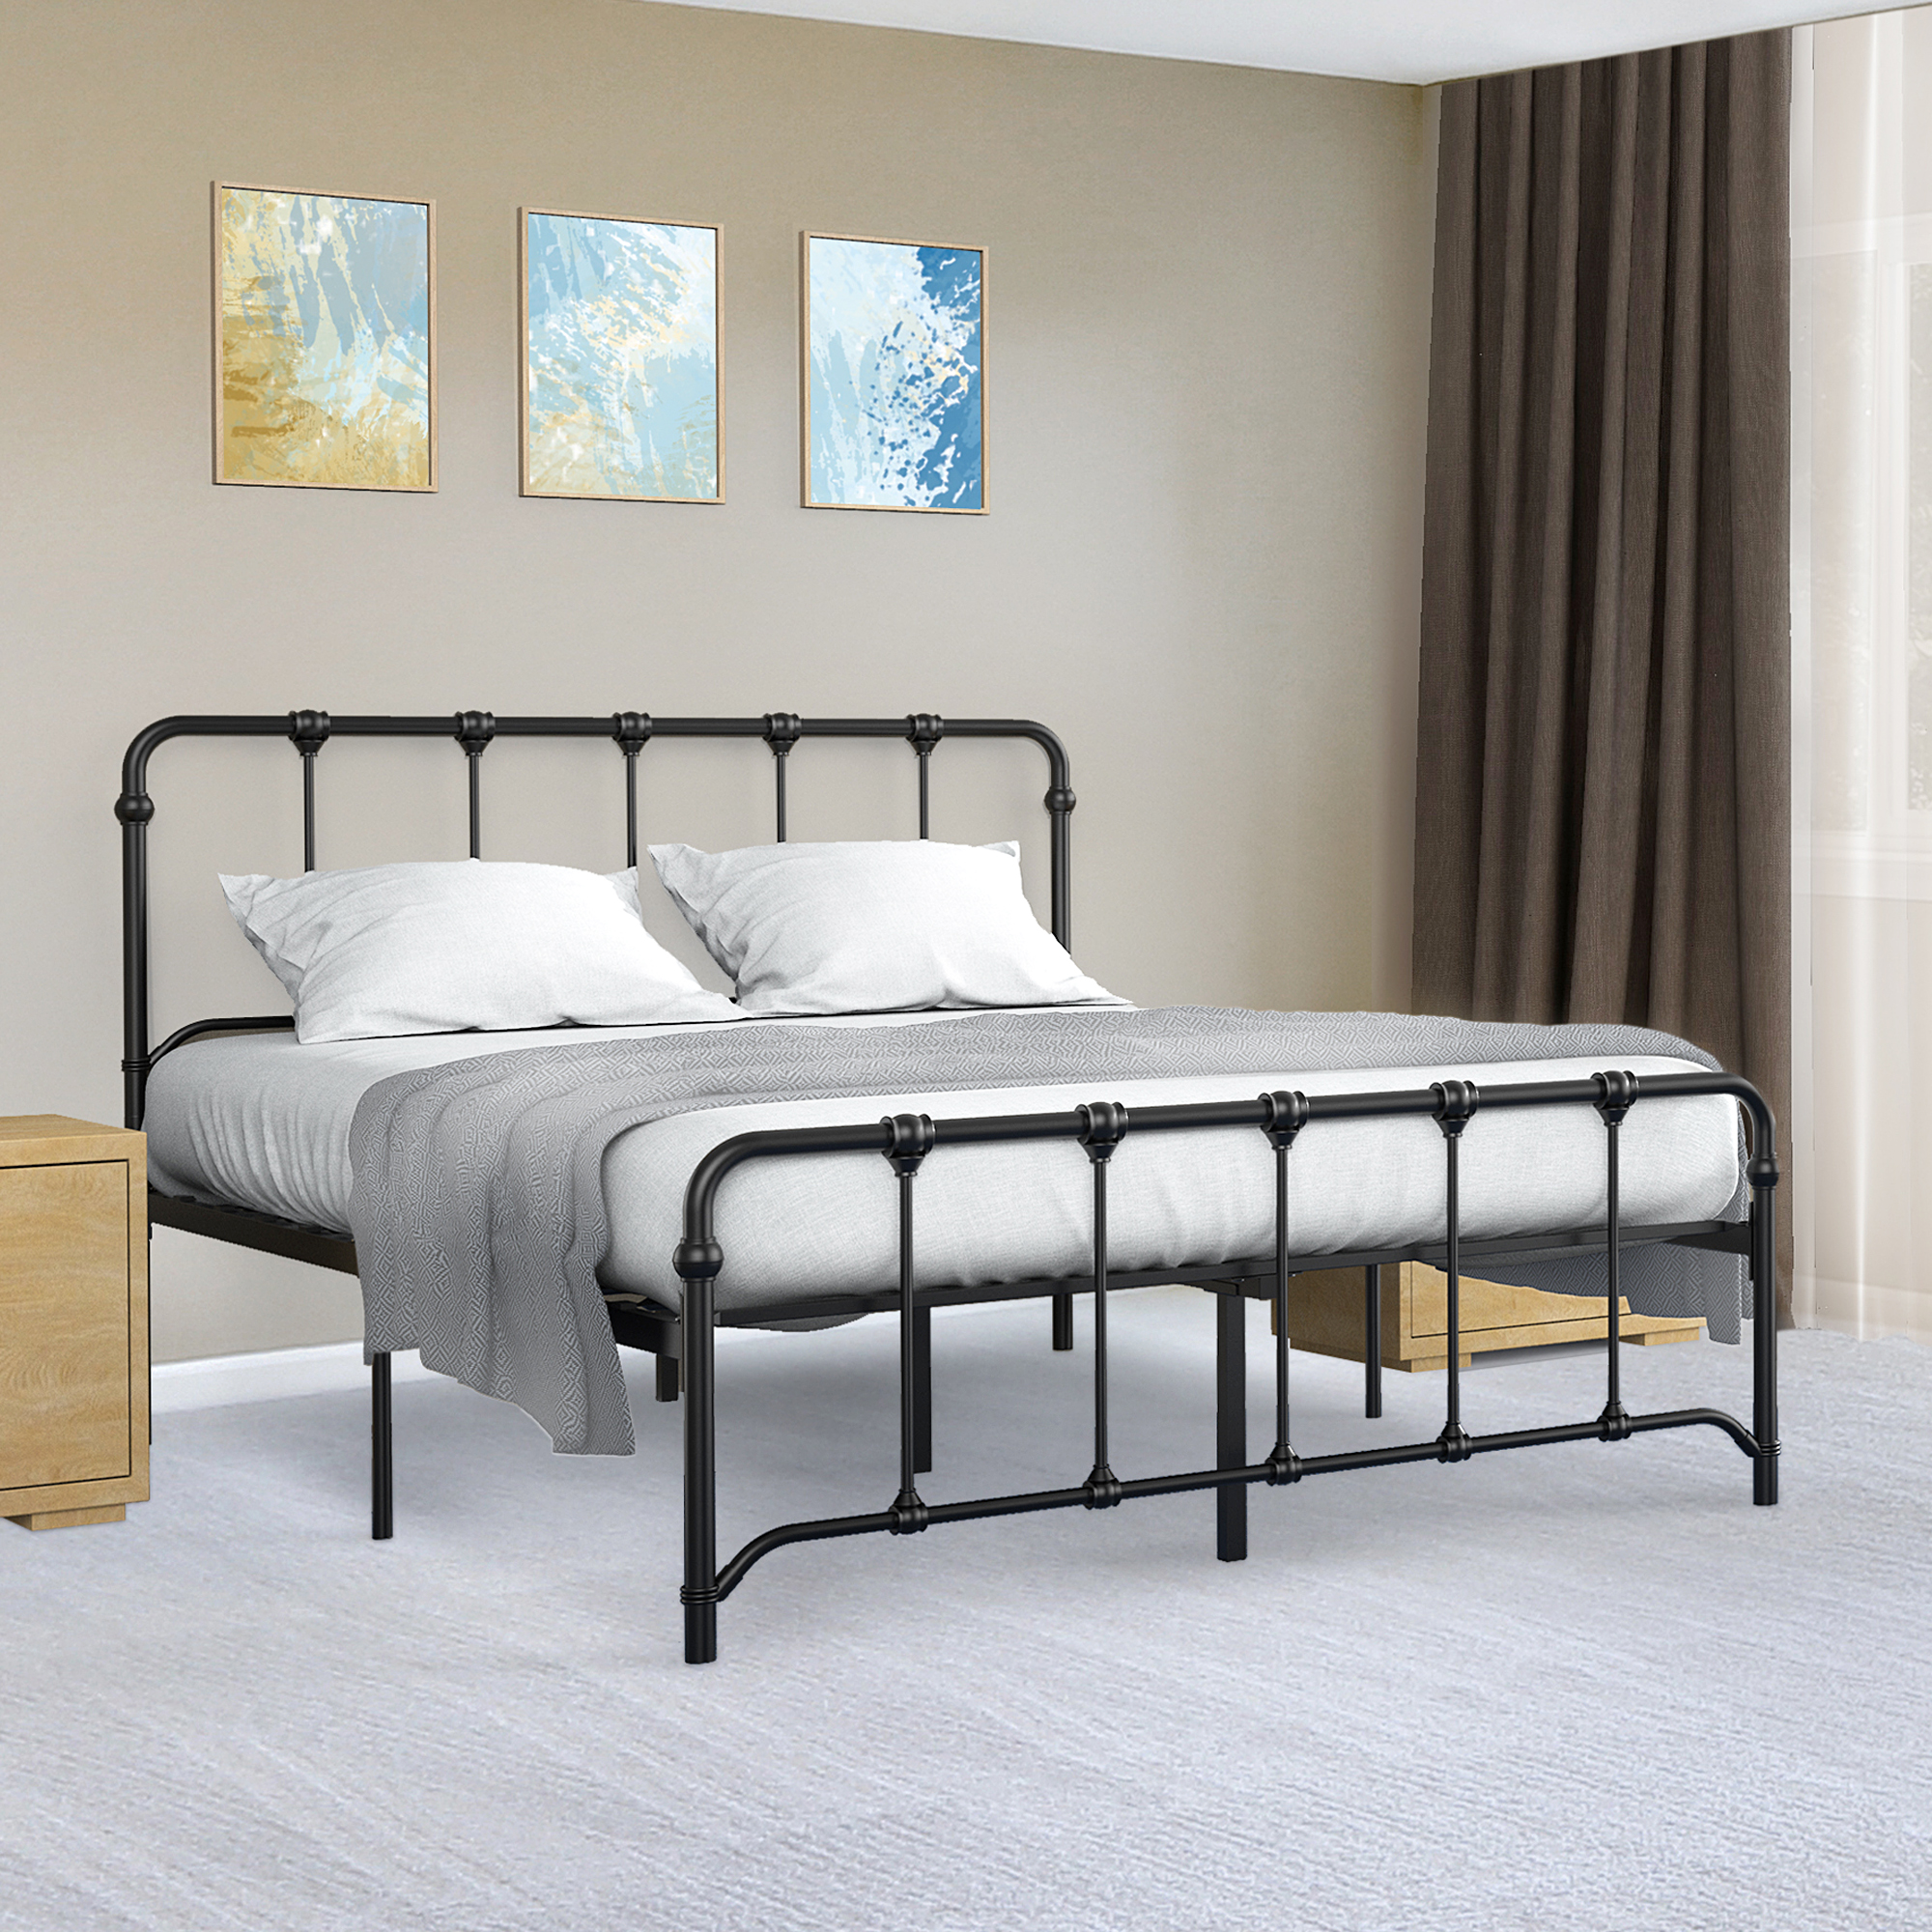 [US Direct] IDEALHOUSE Full Size Metal Bed Frame Platform Bed